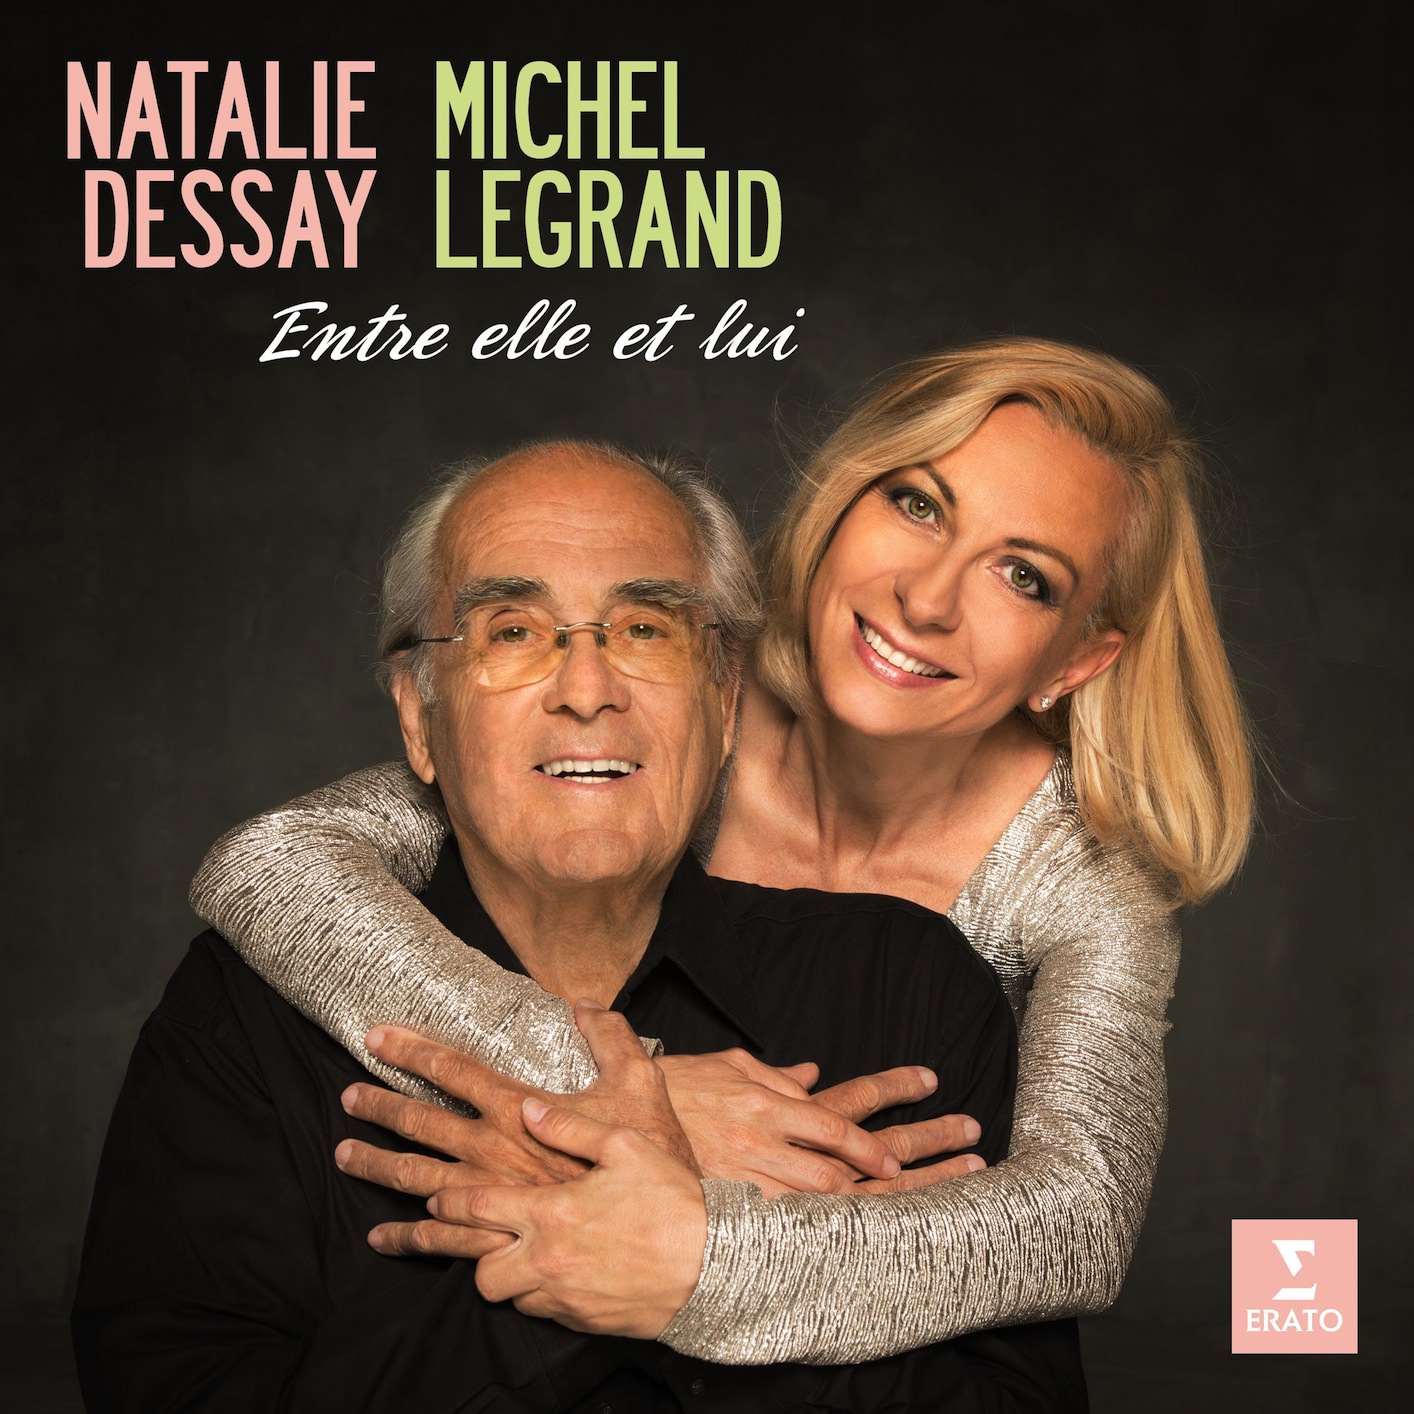 Michel Legrand & Natalie Dessay - Entre elle et lui (2013) [FLAC 24bit/44,1kHz]